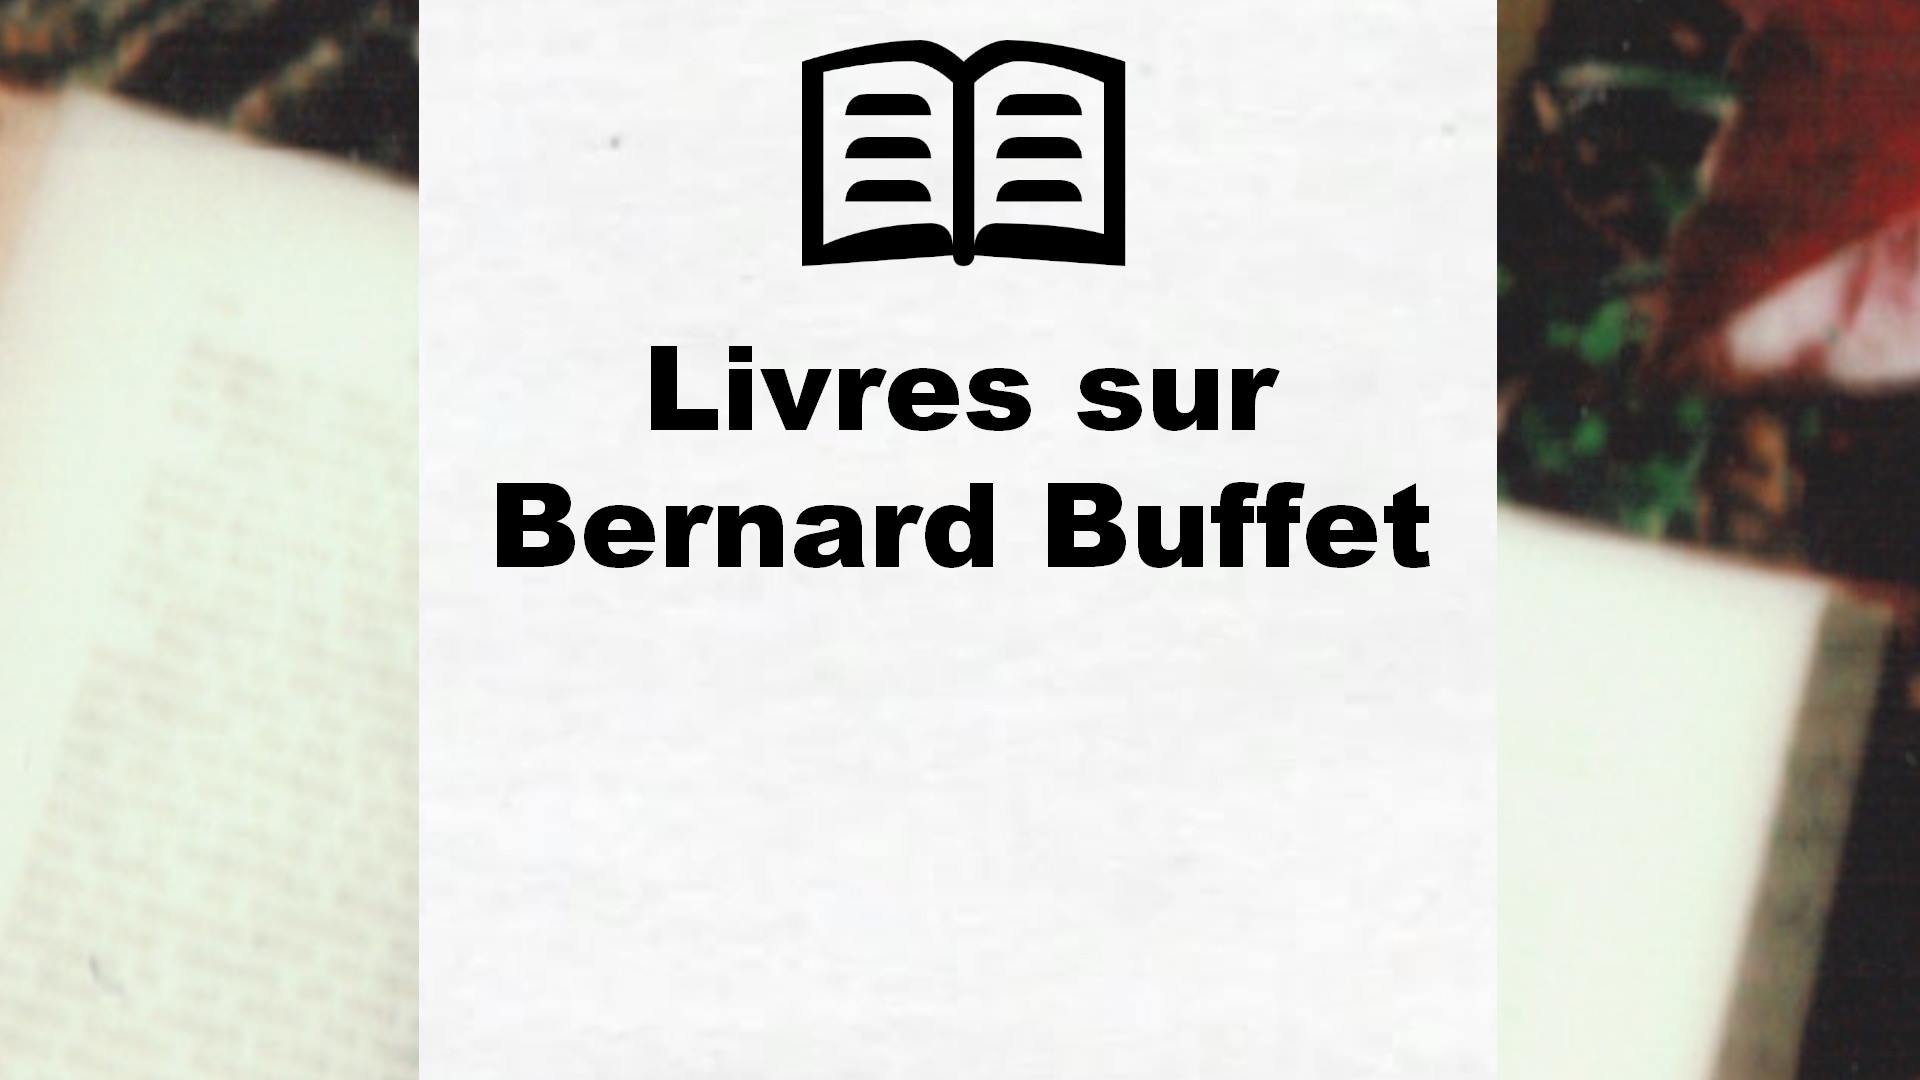 Livres sur Bernard Buffet